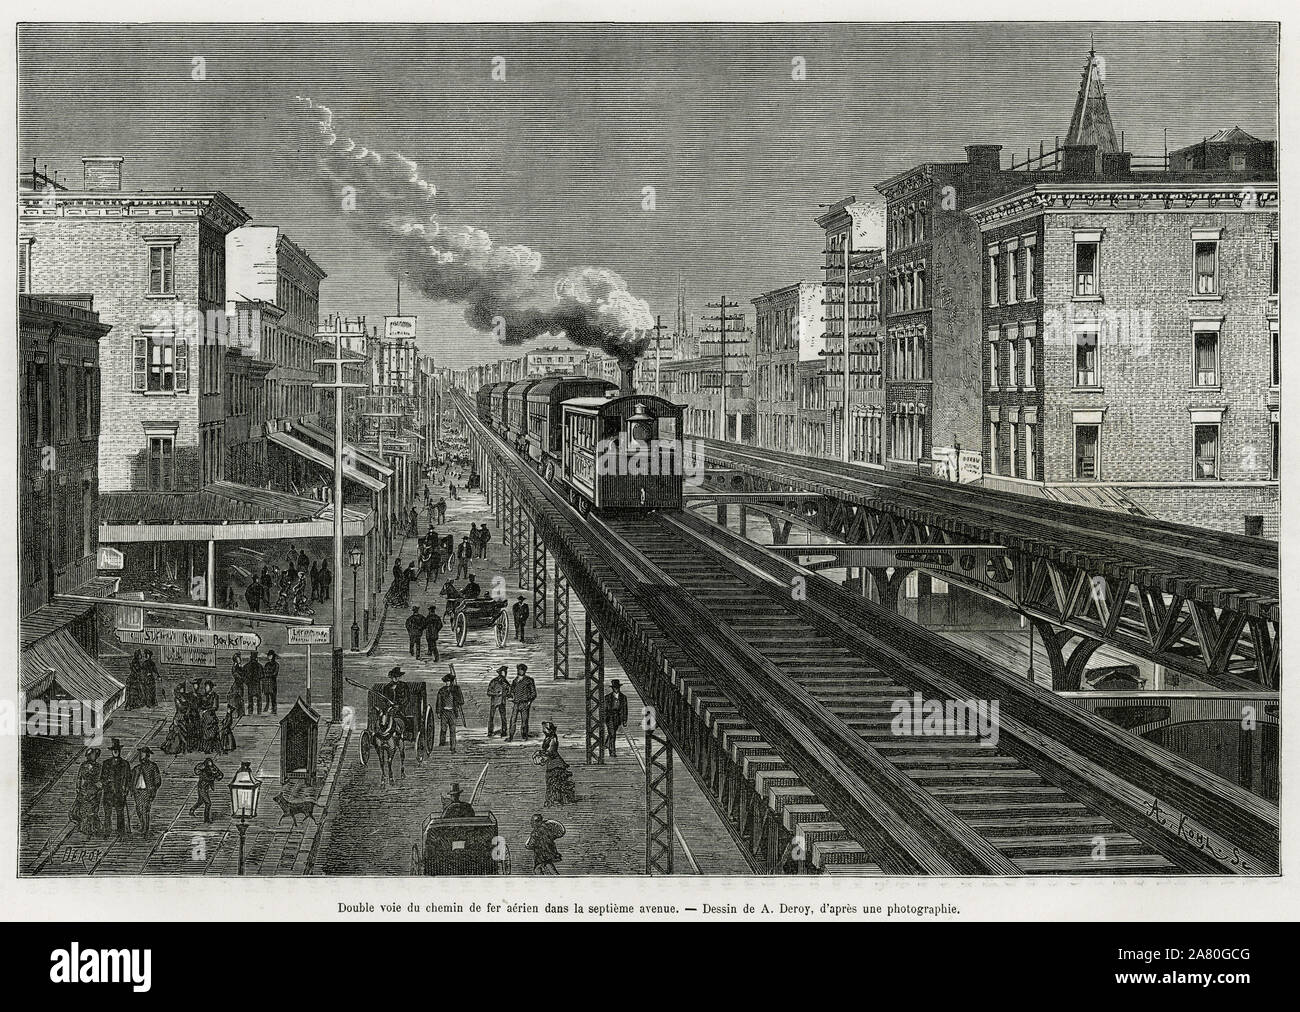 Double voie du chemin de fer aerien dans la septieme avenue, a New-York ( New York). Gravure de A.Deroy, pour illustrer le recit sur les nouveautes de Stock Photo